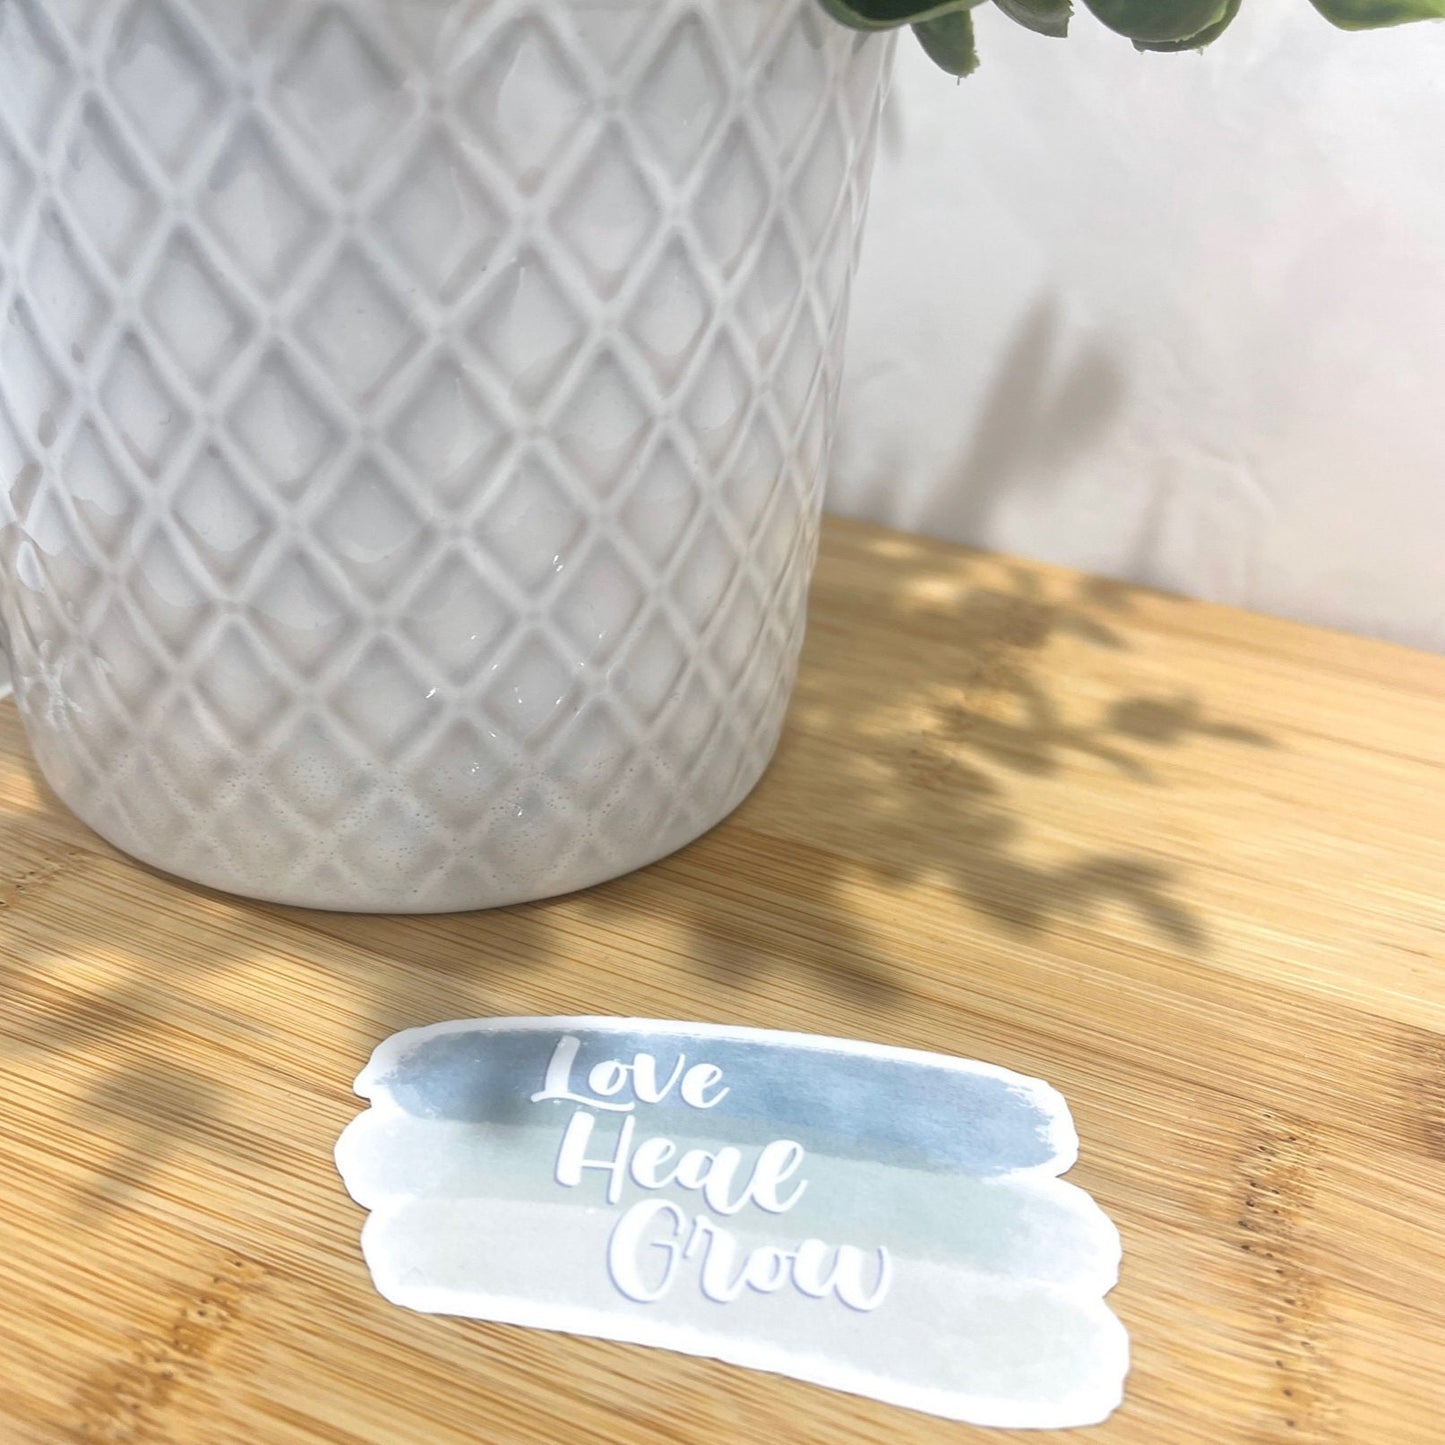 Love  - Heal - Grow Paint Stroke Sticker